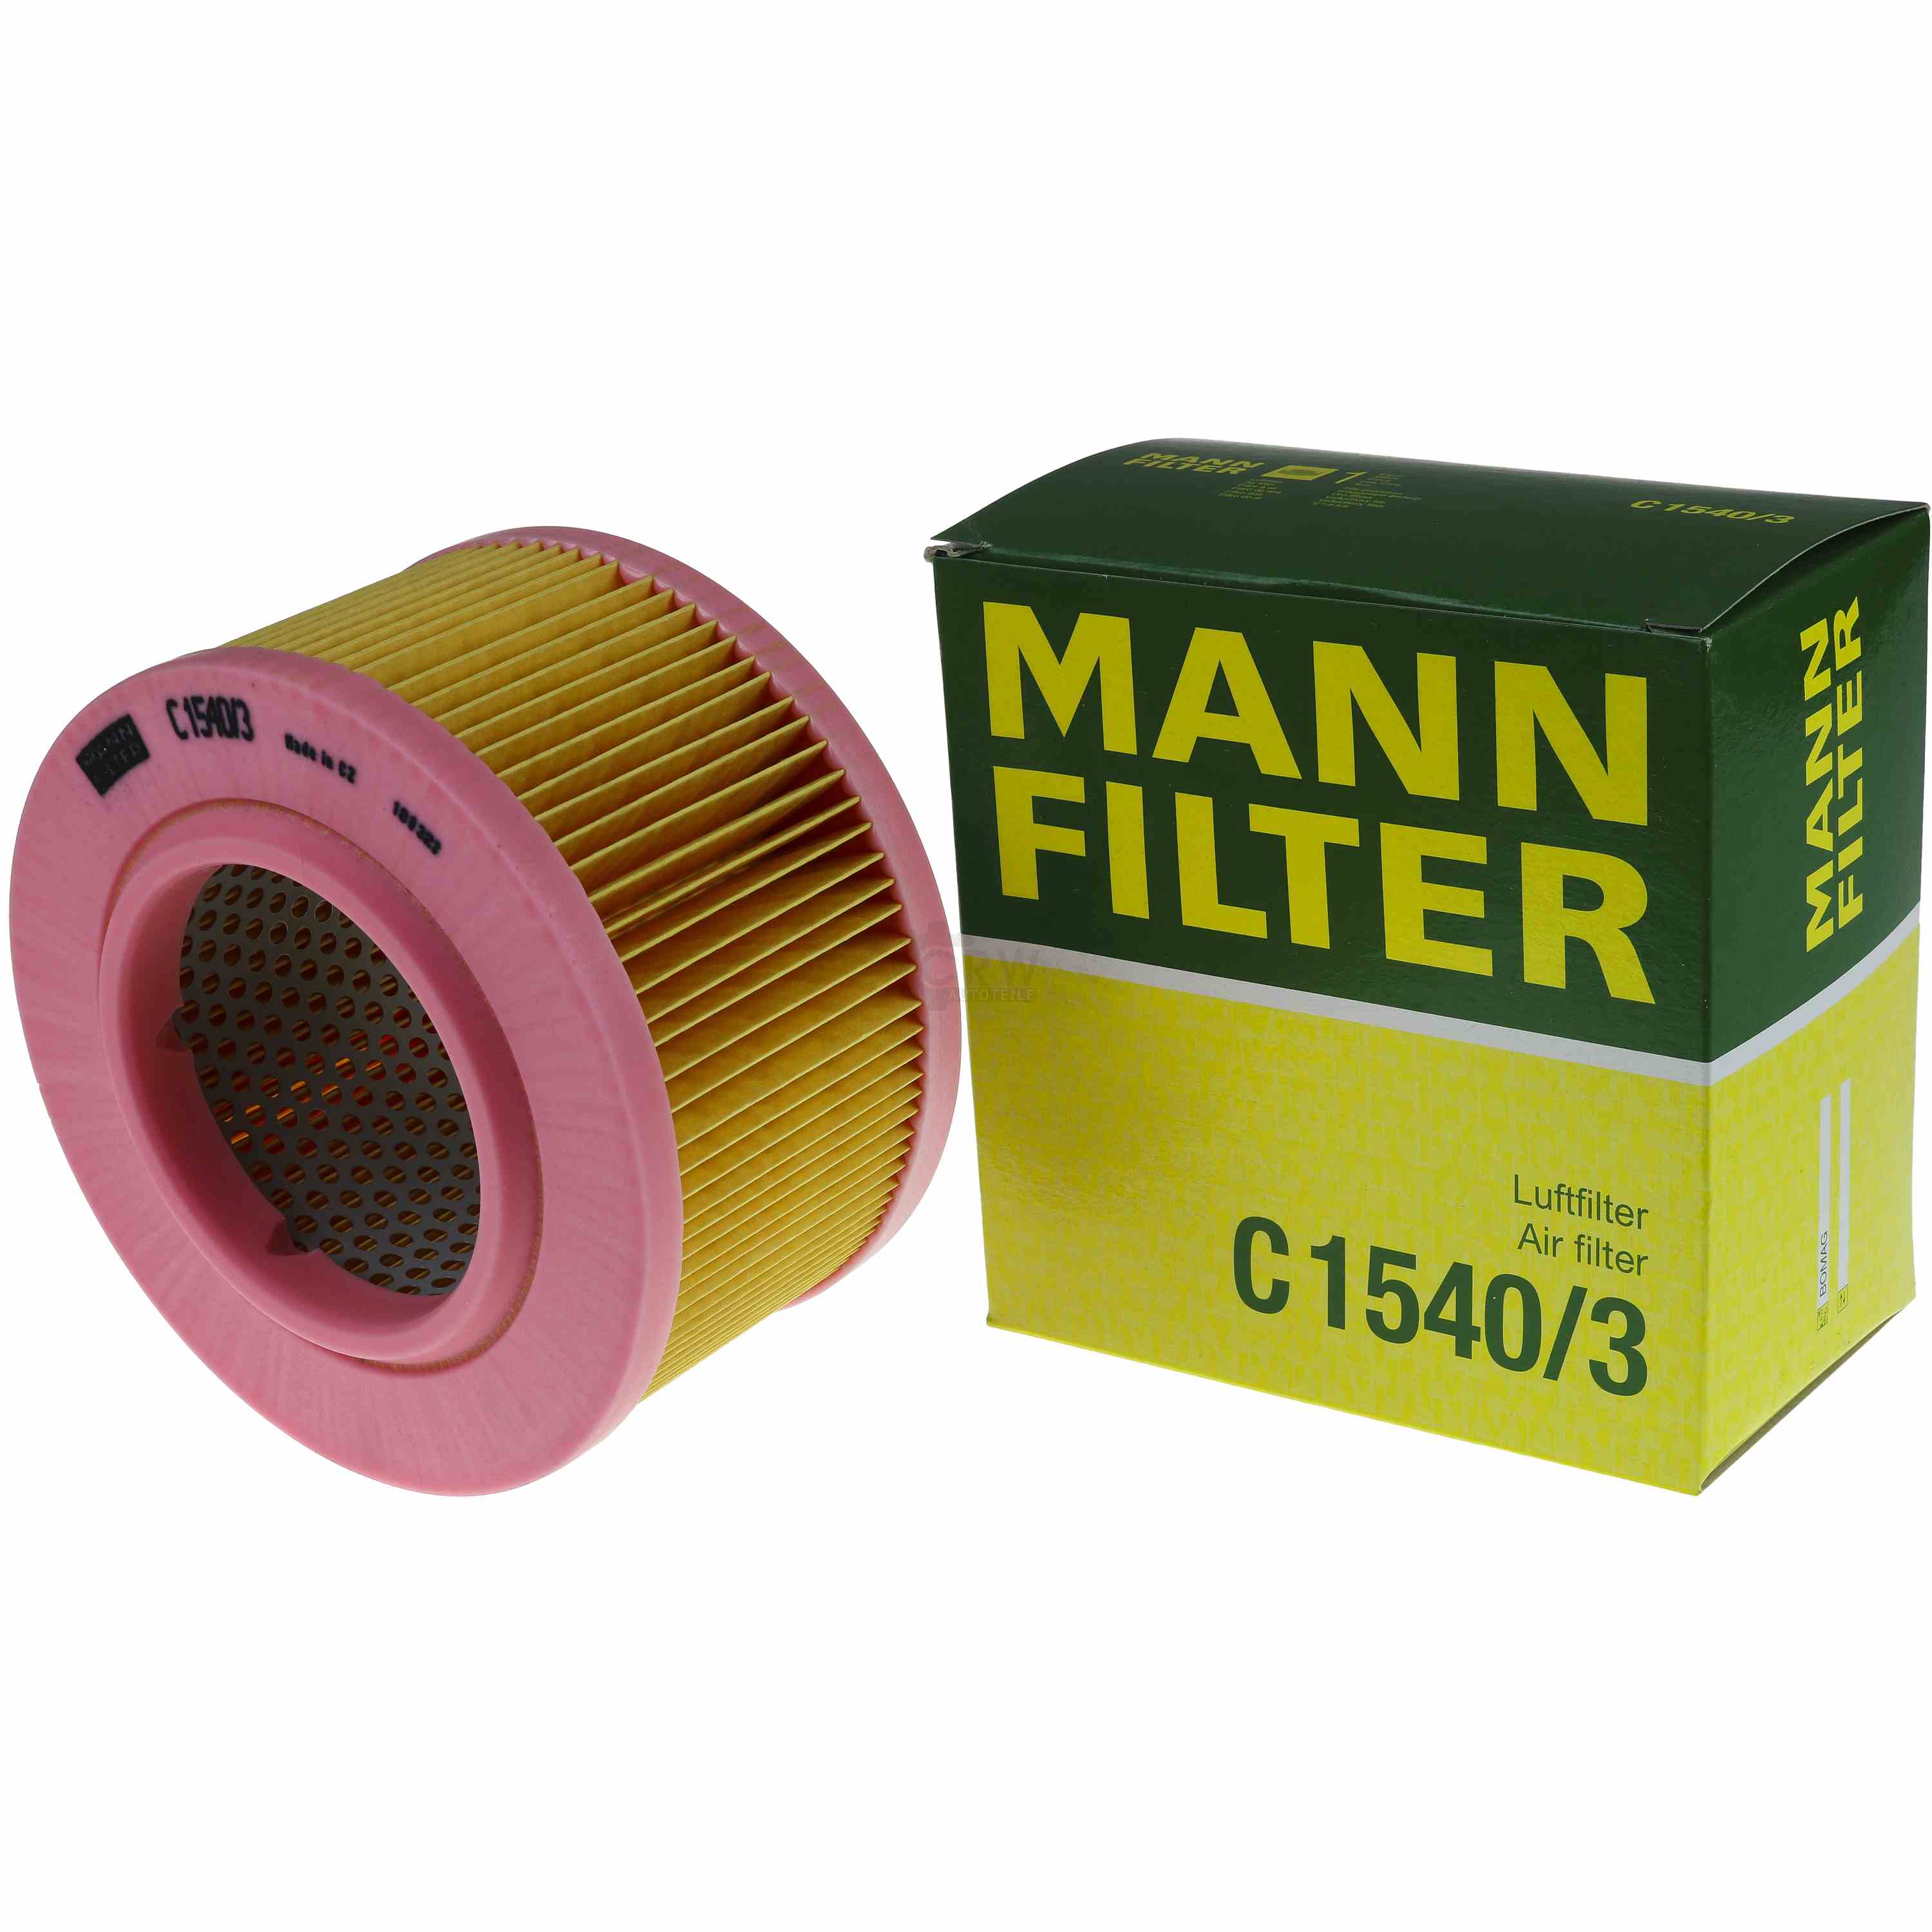 MANN-FILTER Luftfilter C 1540/3